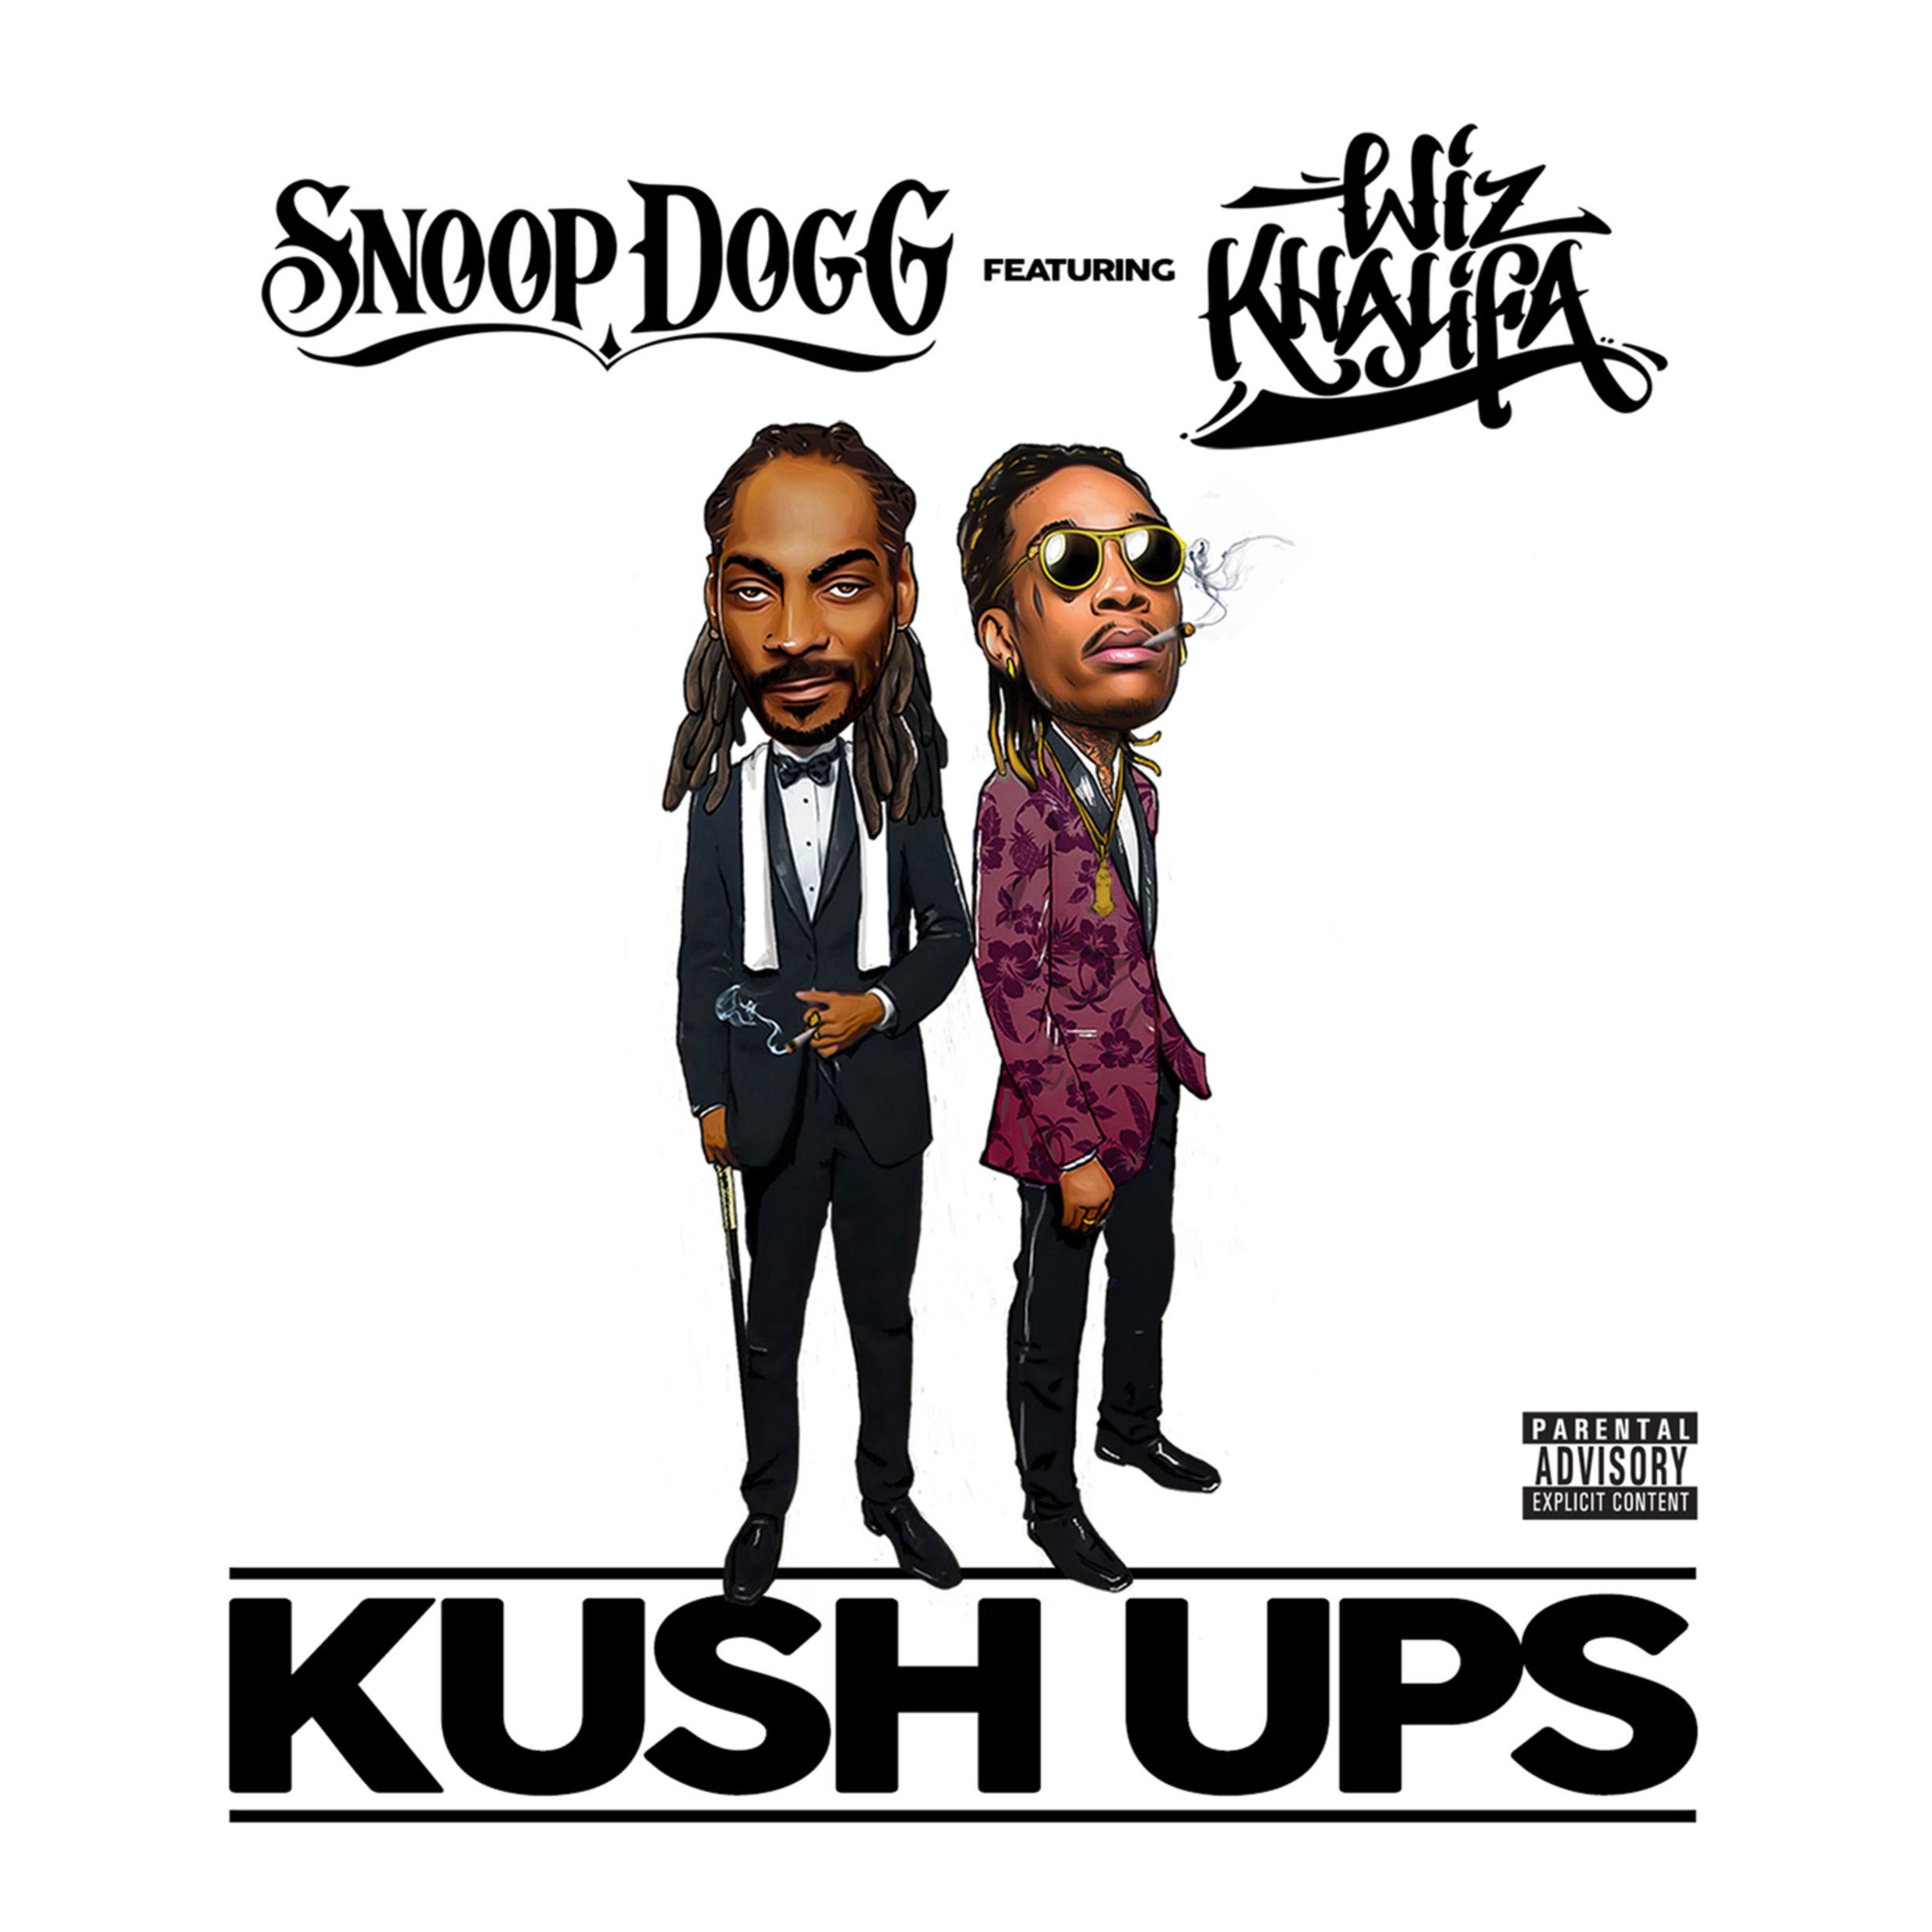 Snoop Dogg con Wiz Khalifa: Kush ups, la portada de la canción